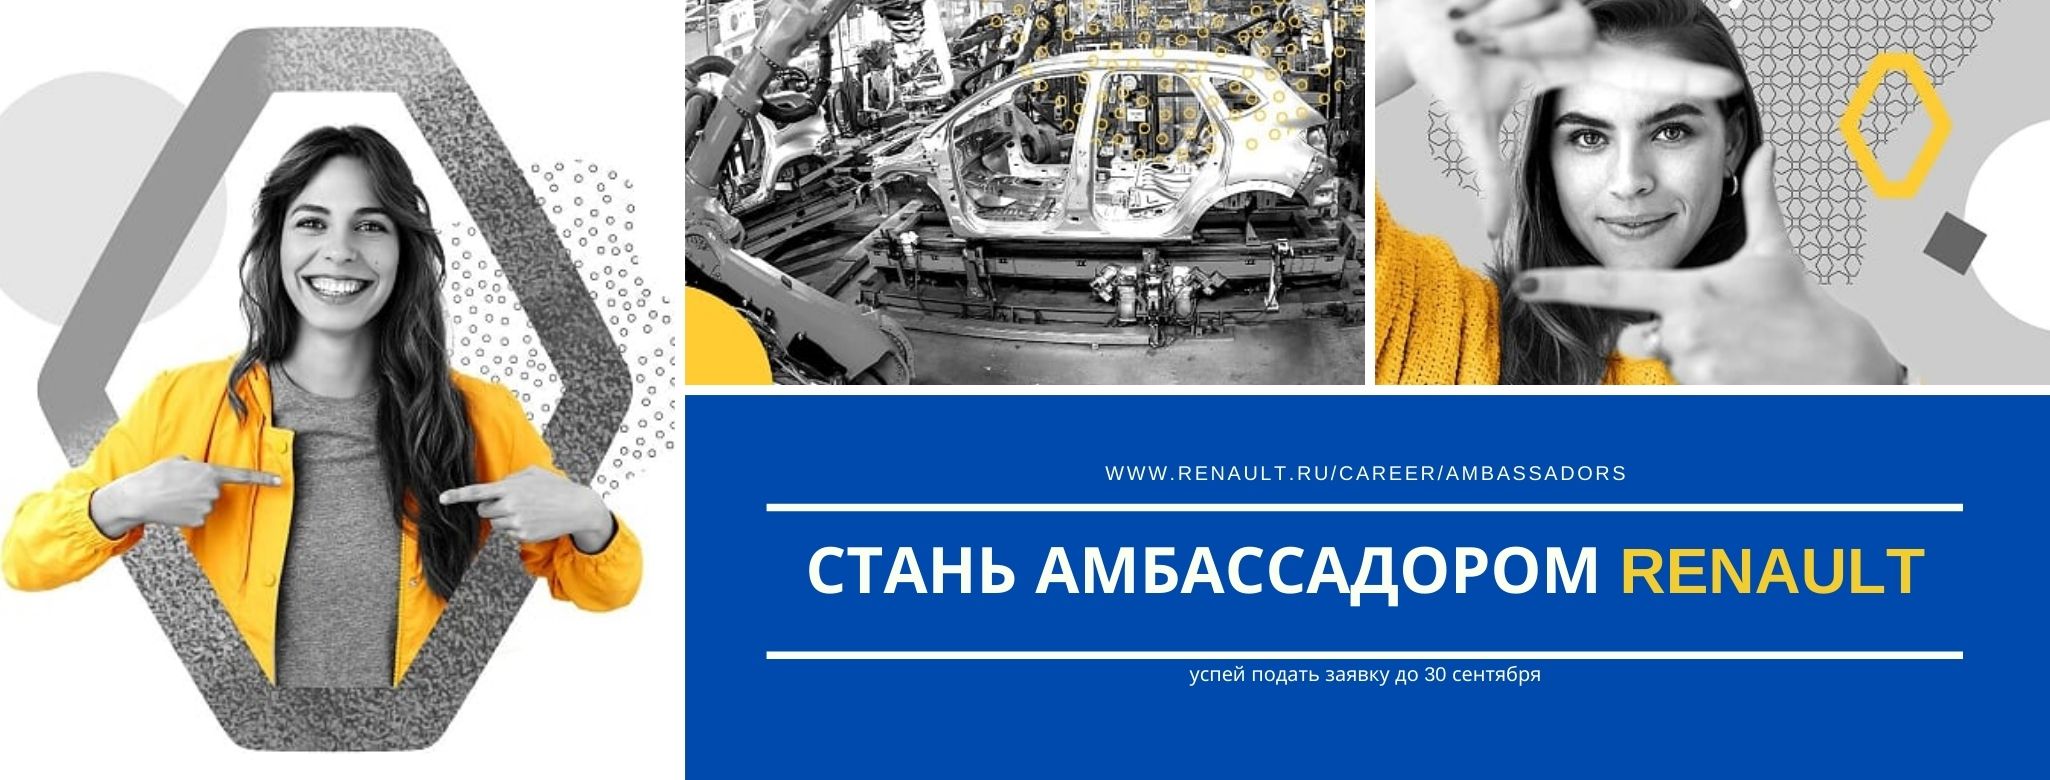 Приглашаем присоединиться к вебинару, где коллеги расскажут о компании Renault и новой программе Амбассадоров!